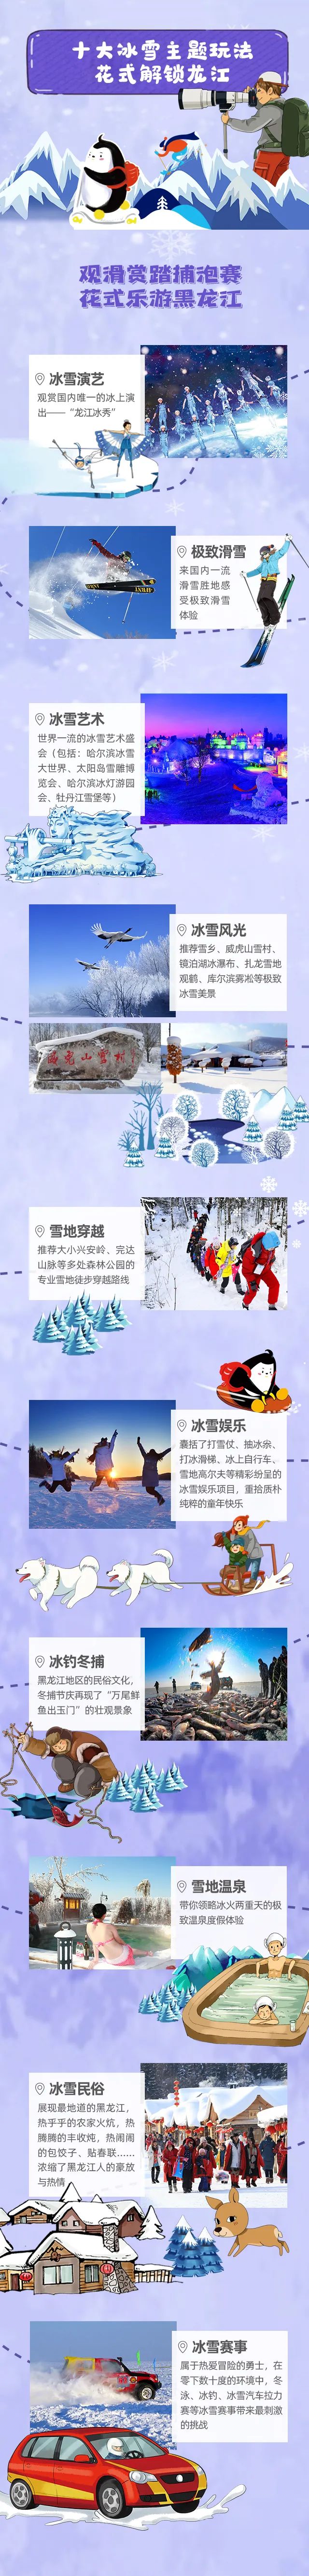 解鎖冬日的童話，冰雪旅遊嗨翻天！2020年黑龍江冬季旅遊産品線路速覽